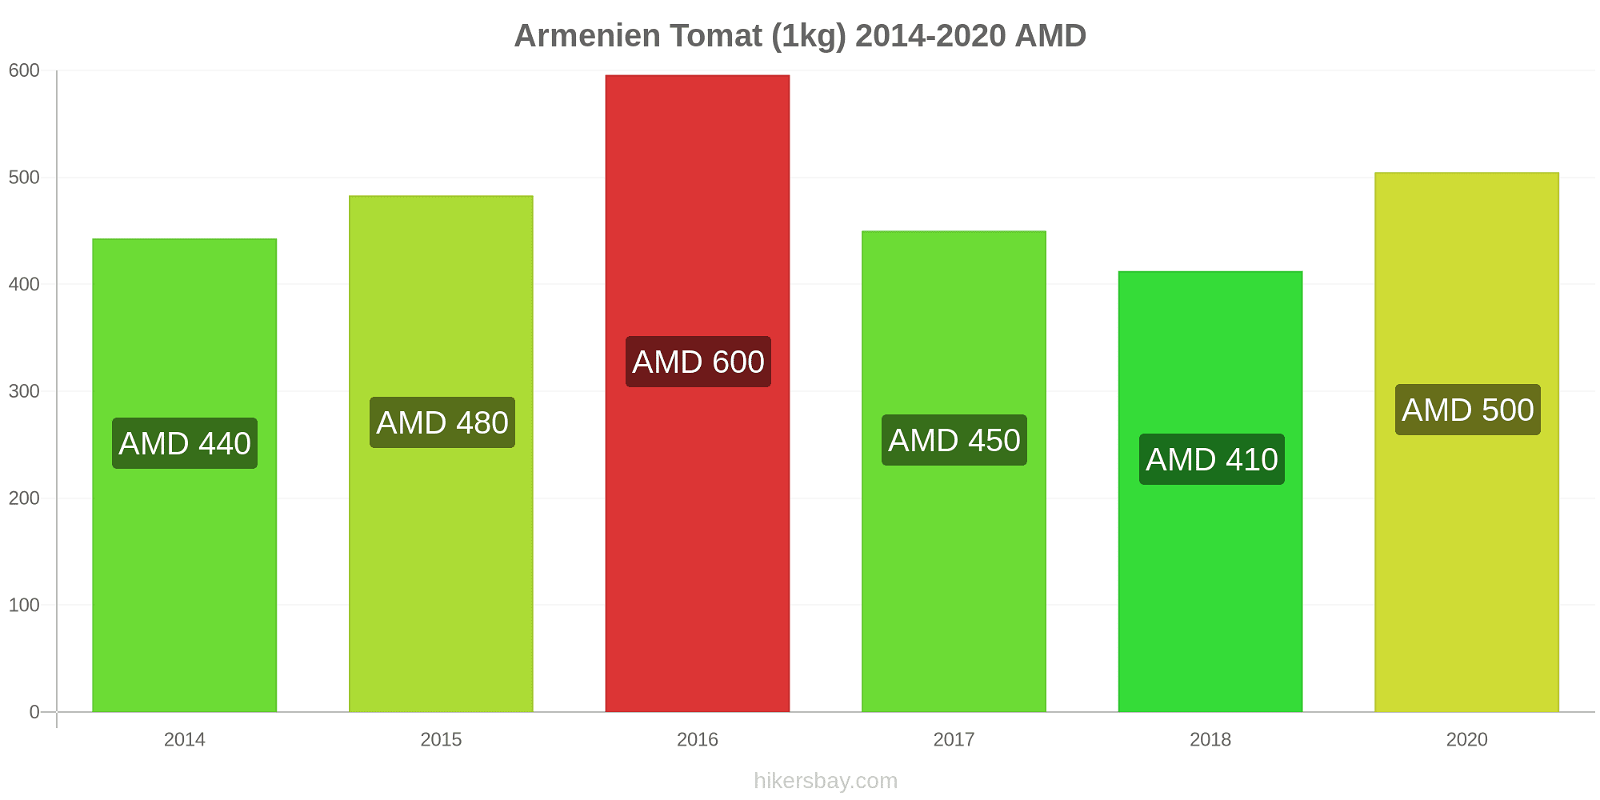 Armenien prisförändringar Tomat (1kg) hikersbay.com